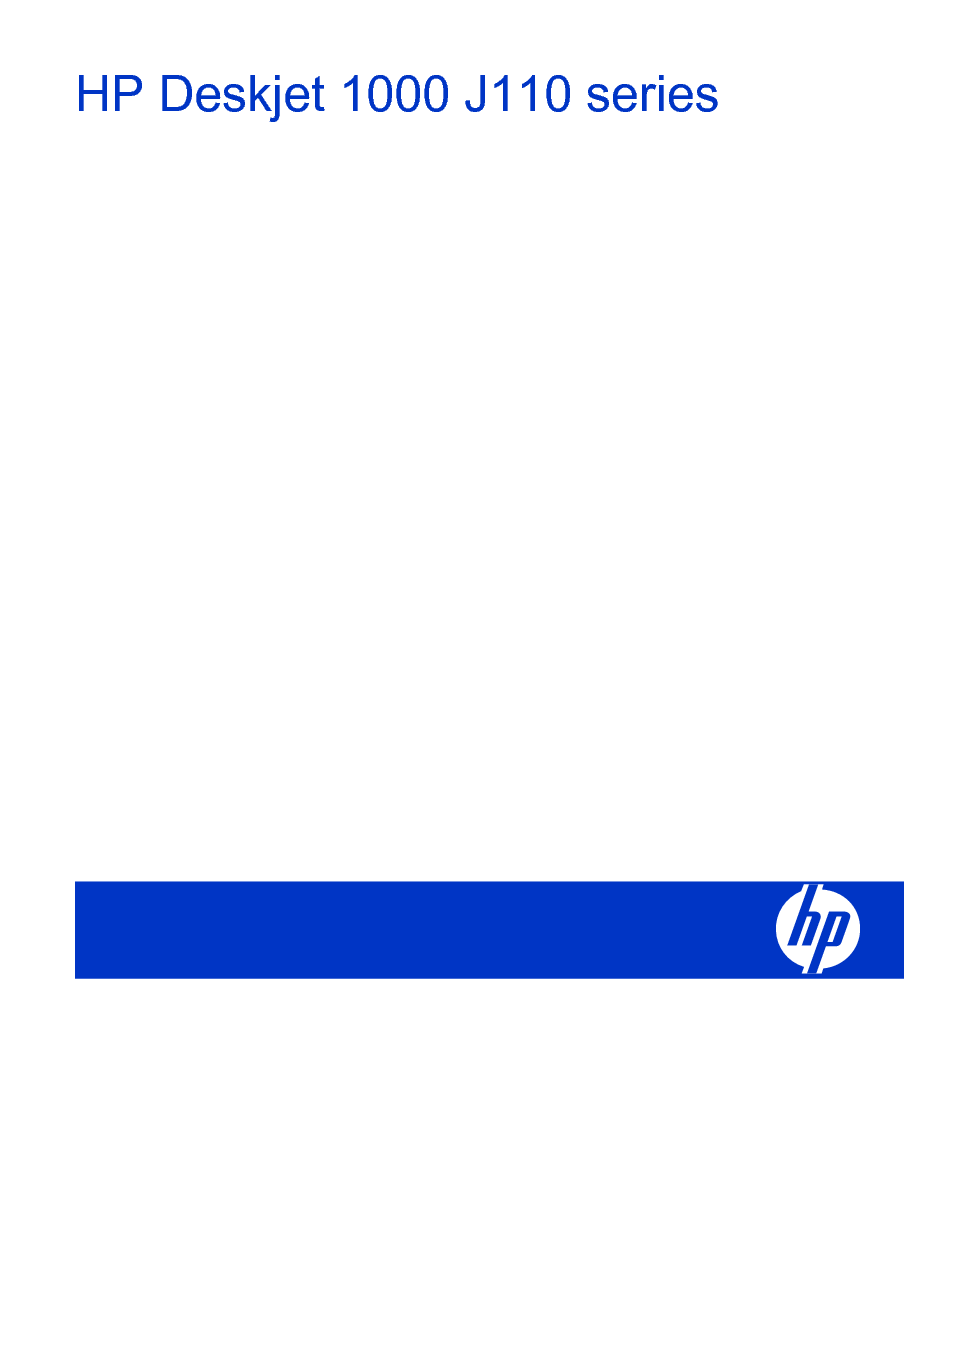 惠普 HP DeskJet 1000 J110 用户指南 封面